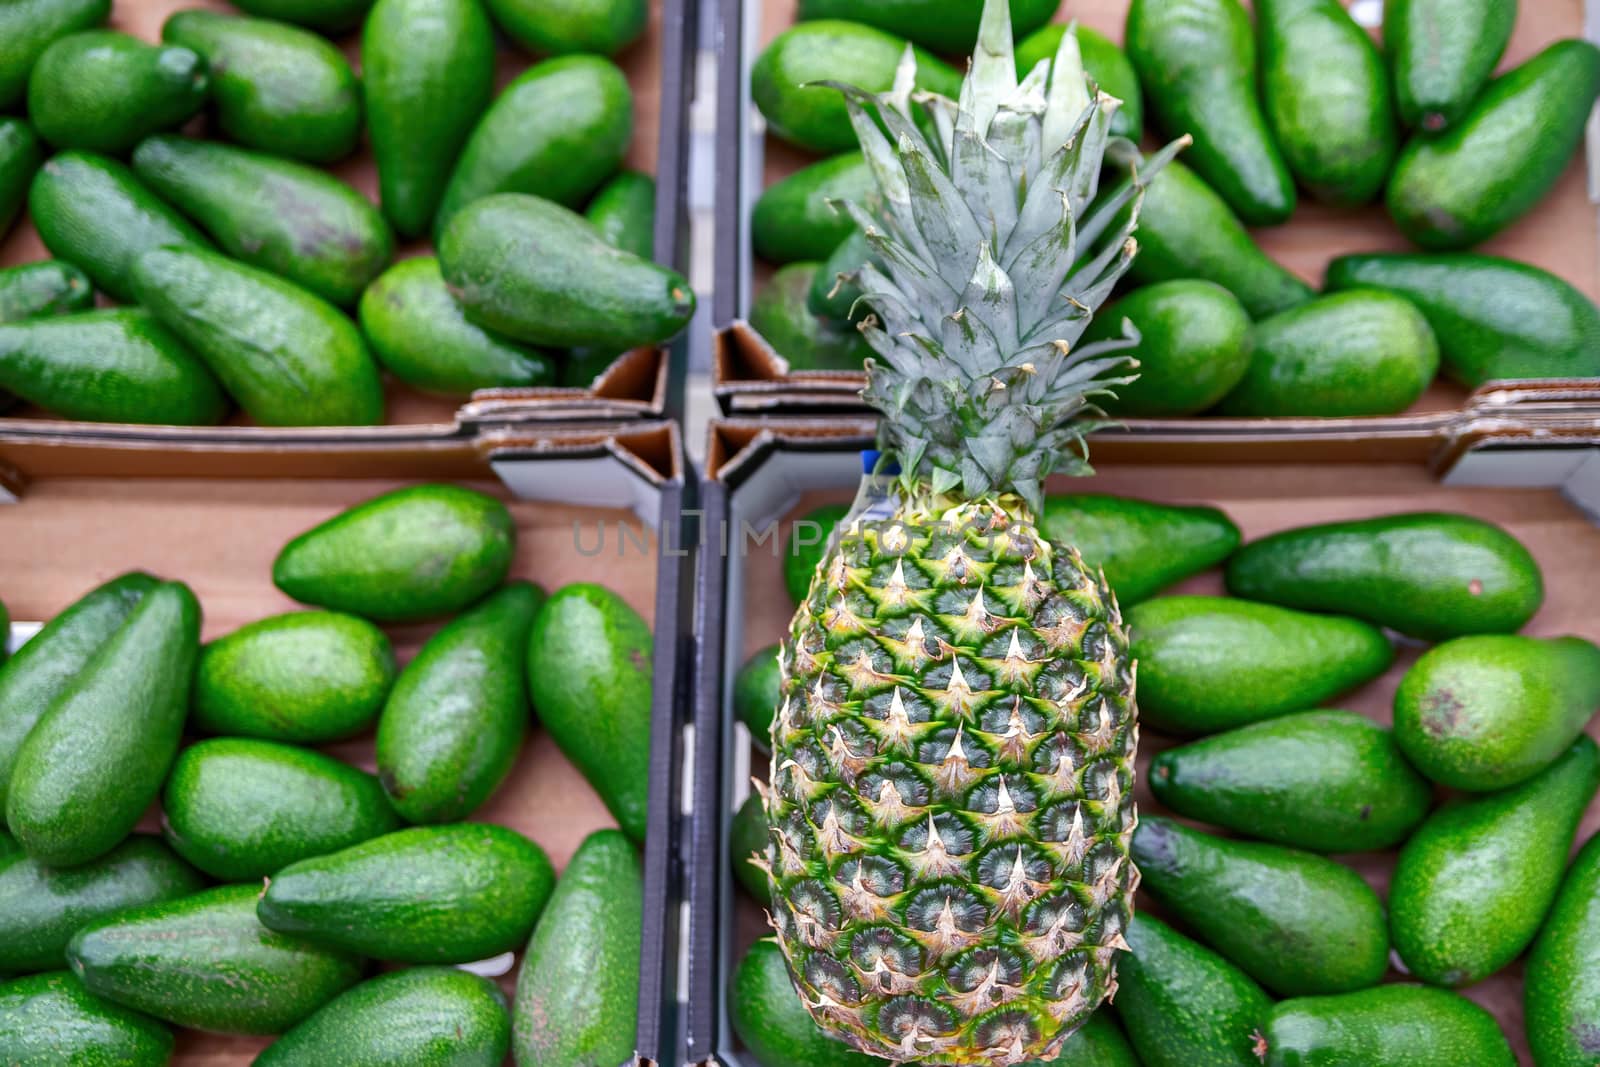 Fresh pineapple on shelves in supermarket. by bonilook